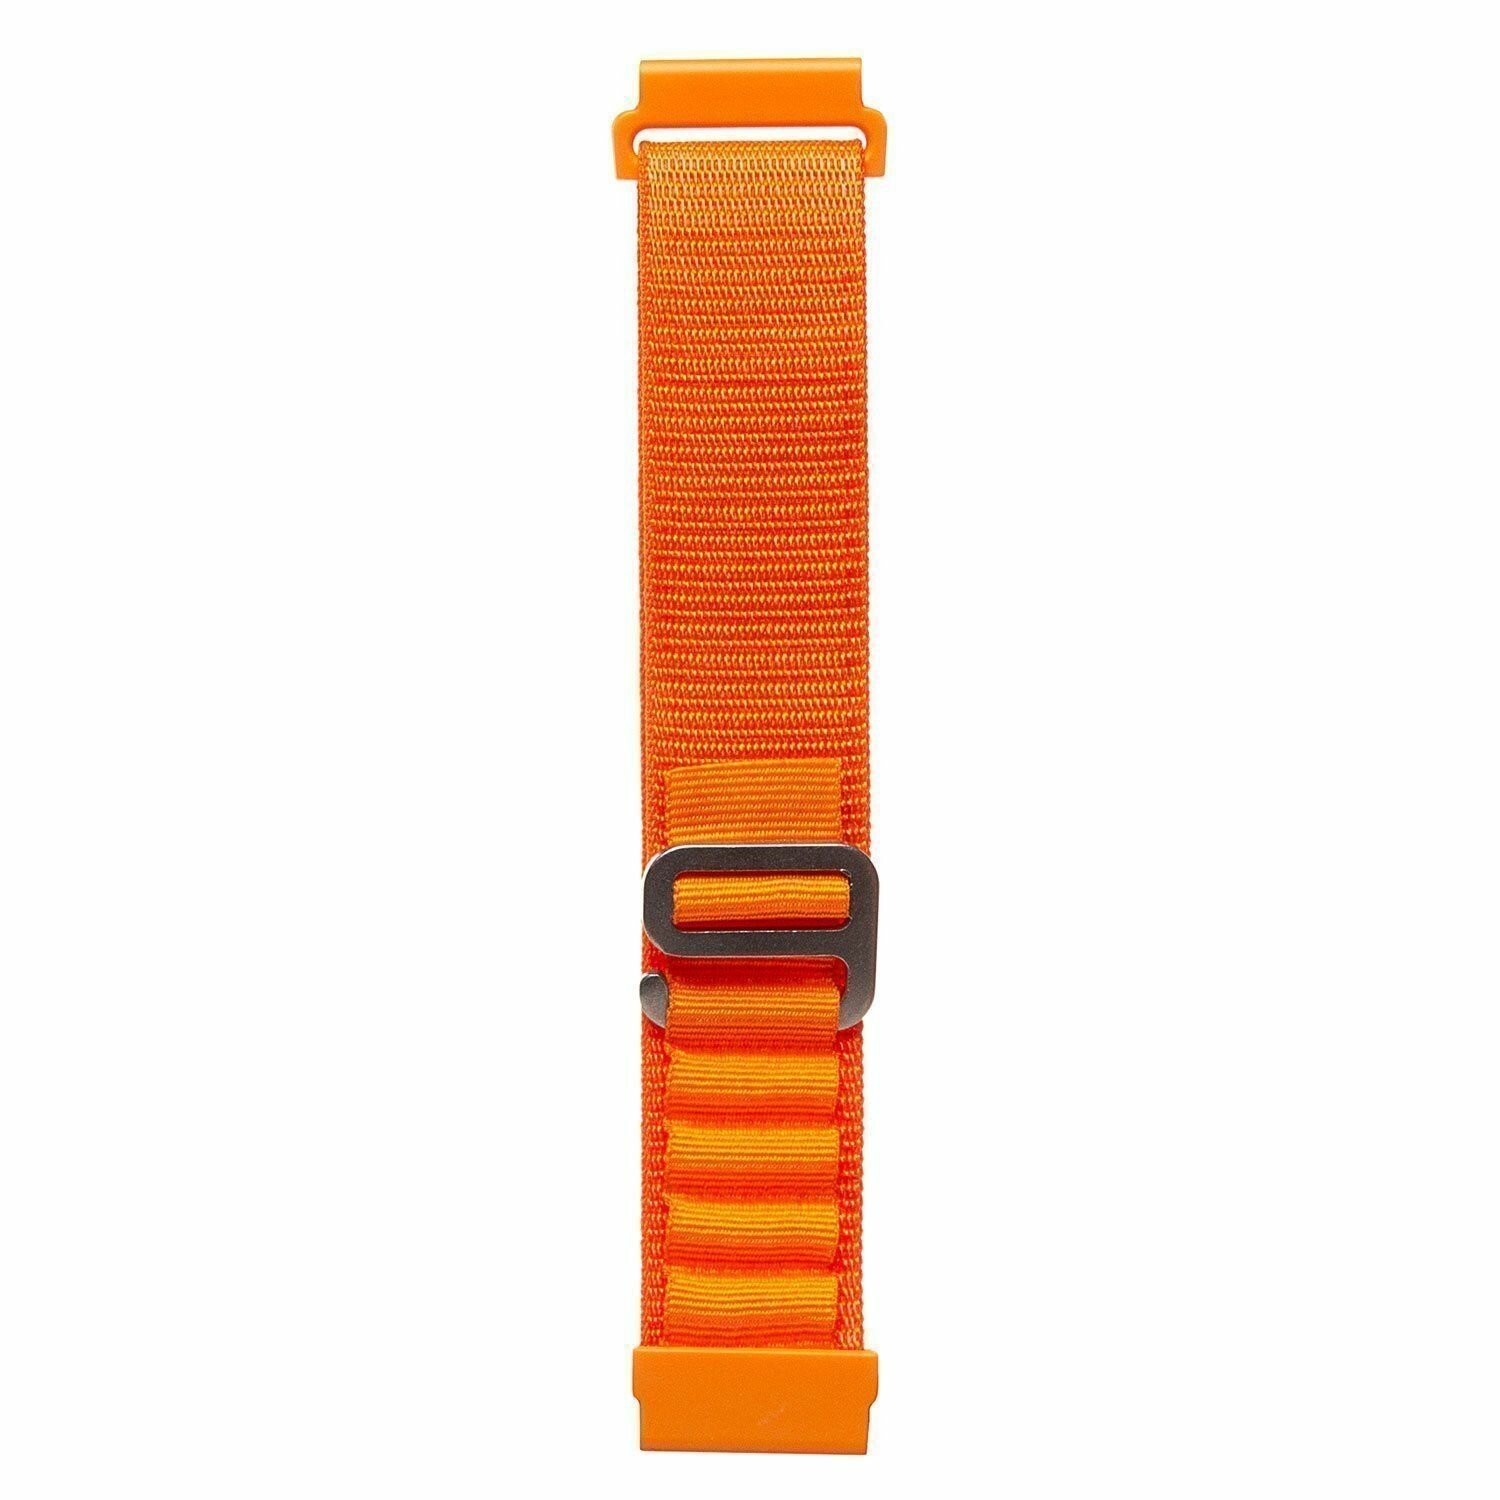 Универсальный нейлоновый браслет Alpine Loop (Альпийская петля) с креплением 22 мм / Ремешок с креплением 22 мм для Samsung Gear S3 Frontier/Gear S3 Classic/Galaxy Watch оранжевый